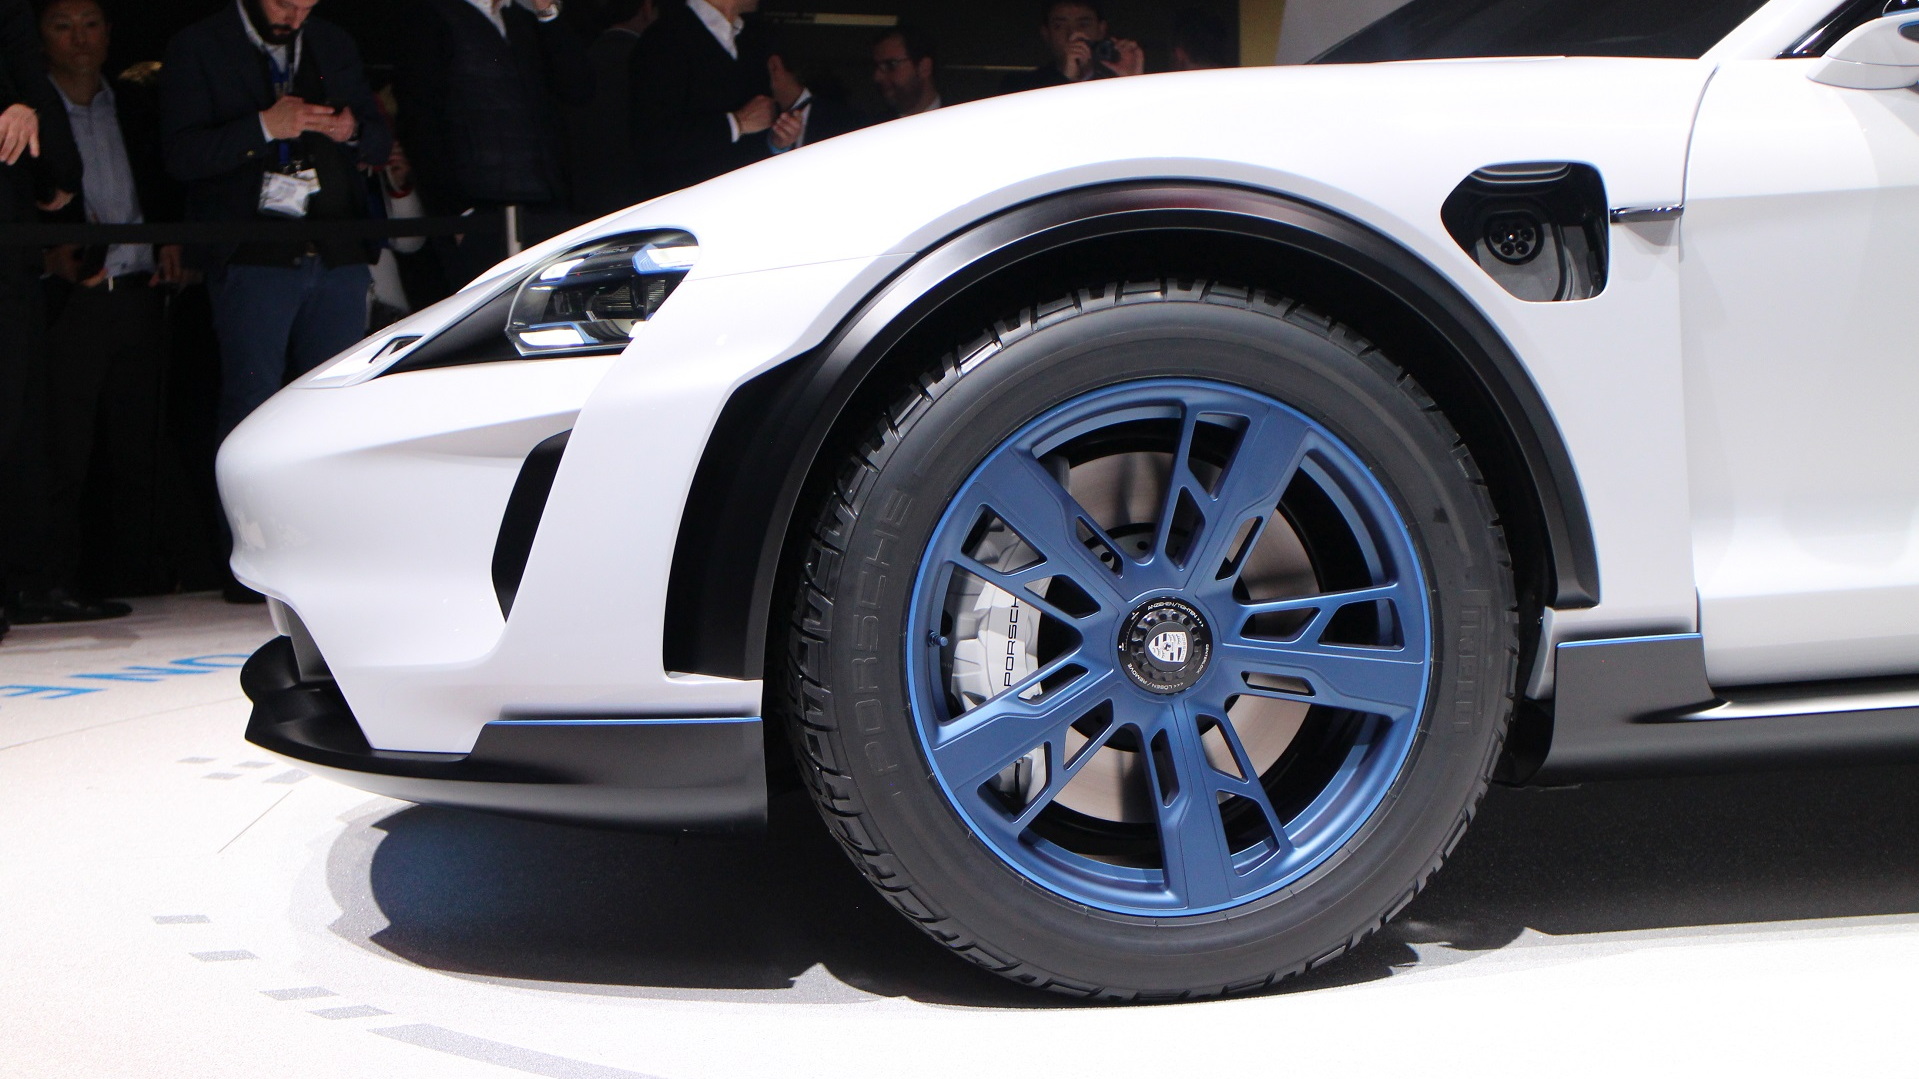 Behind the scenes: Porsche Mission E concept design video